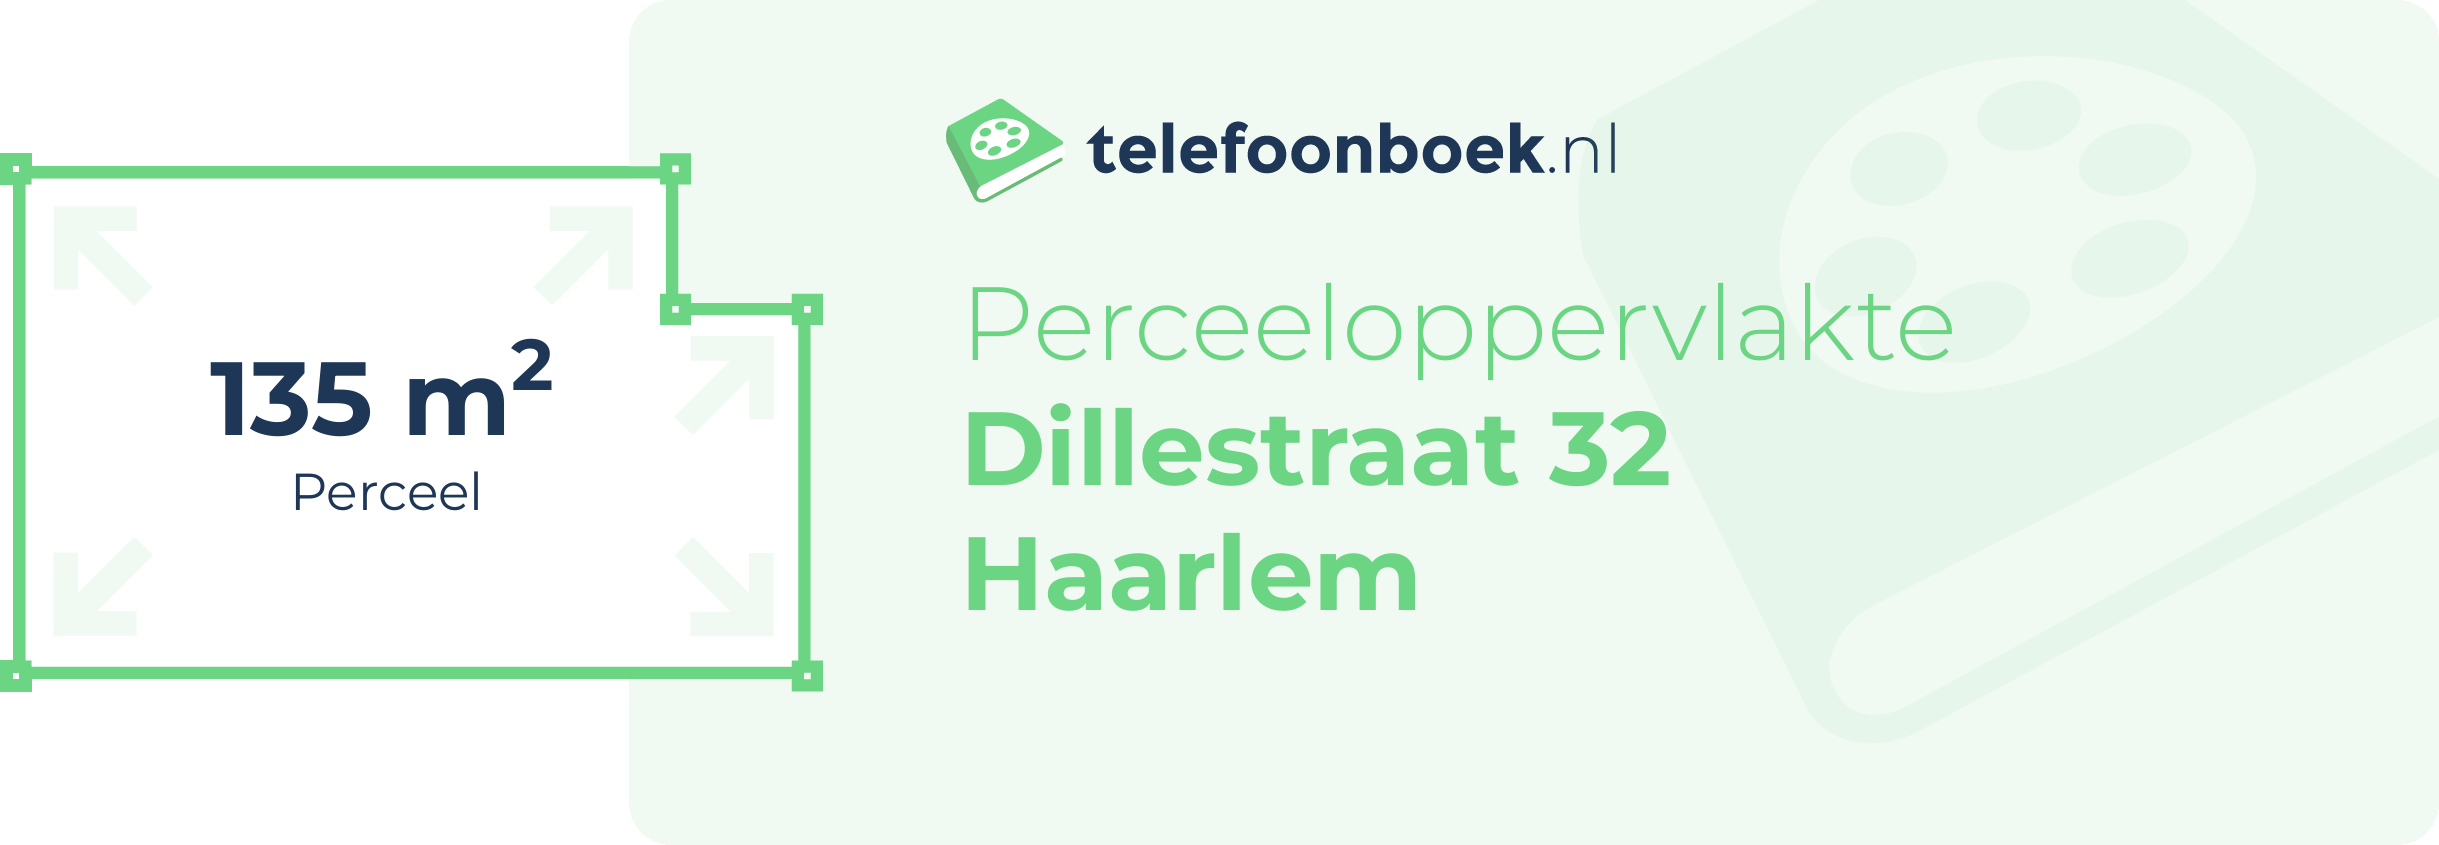 Perceeloppervlakte Dillestraat 32 Haarlem